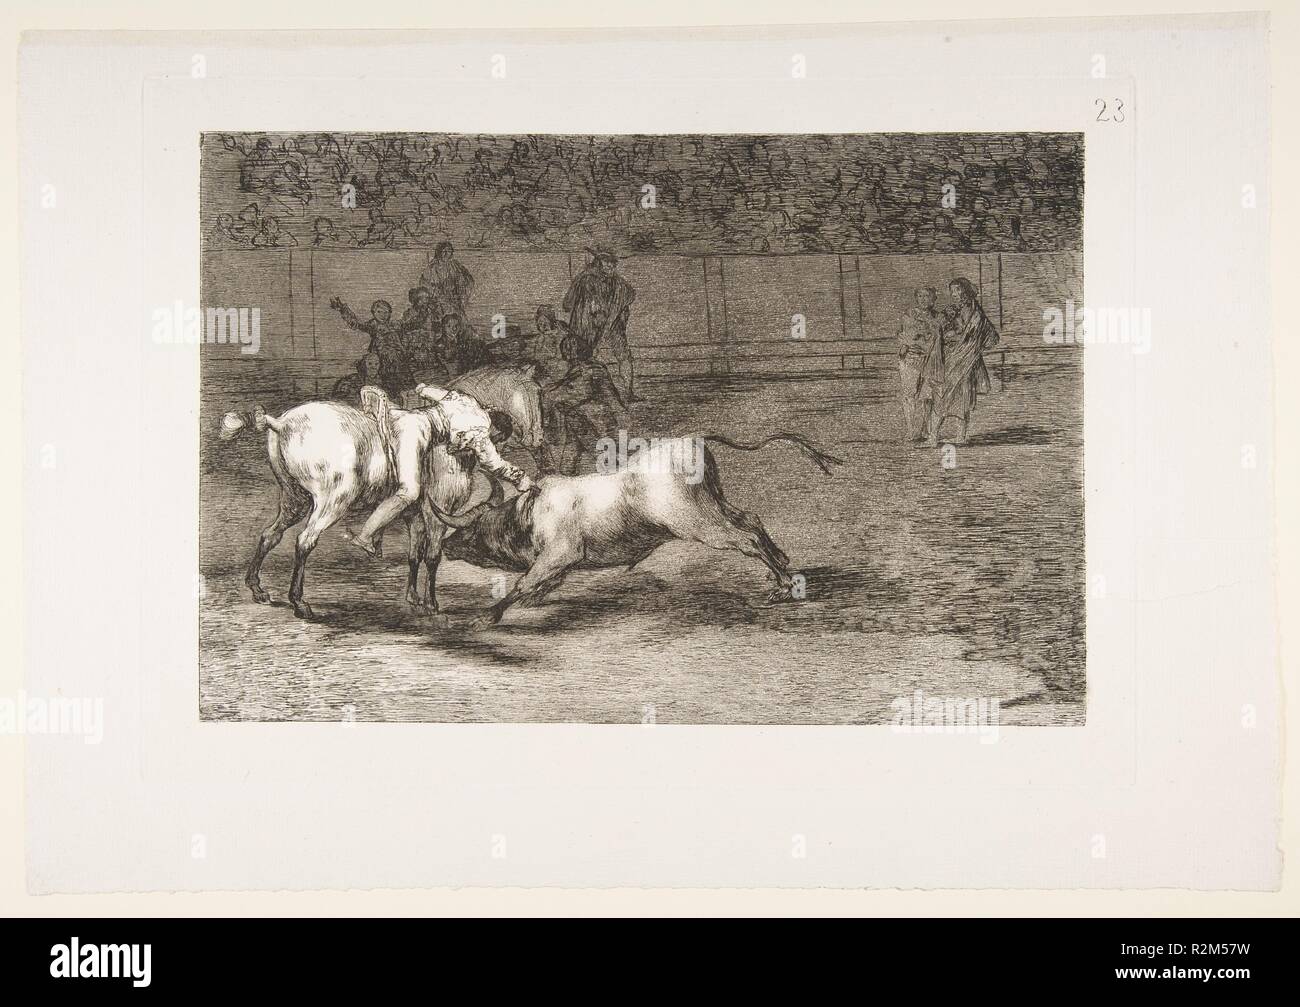 Platte 23 aus der "Tauromaquia': Mariano Fernandez, alias die Indischen, tötet den Bullen von seinem Pferd. Artist: Goya (Francisco de Goya y Lucientes) (Spanisch, Fuendetodos 1746-1828 Bordeaux). Abmessungen: Platte: 9 13/16 x 13 7/8 in. (25 × 35,2 cm) Blatt: 12 3/16 x 17 3/8 in. (30,9 × 44,2 cm). Datum: 1816. Museum: Metropolitan Museum of Art, New York, USA. Stockfoto